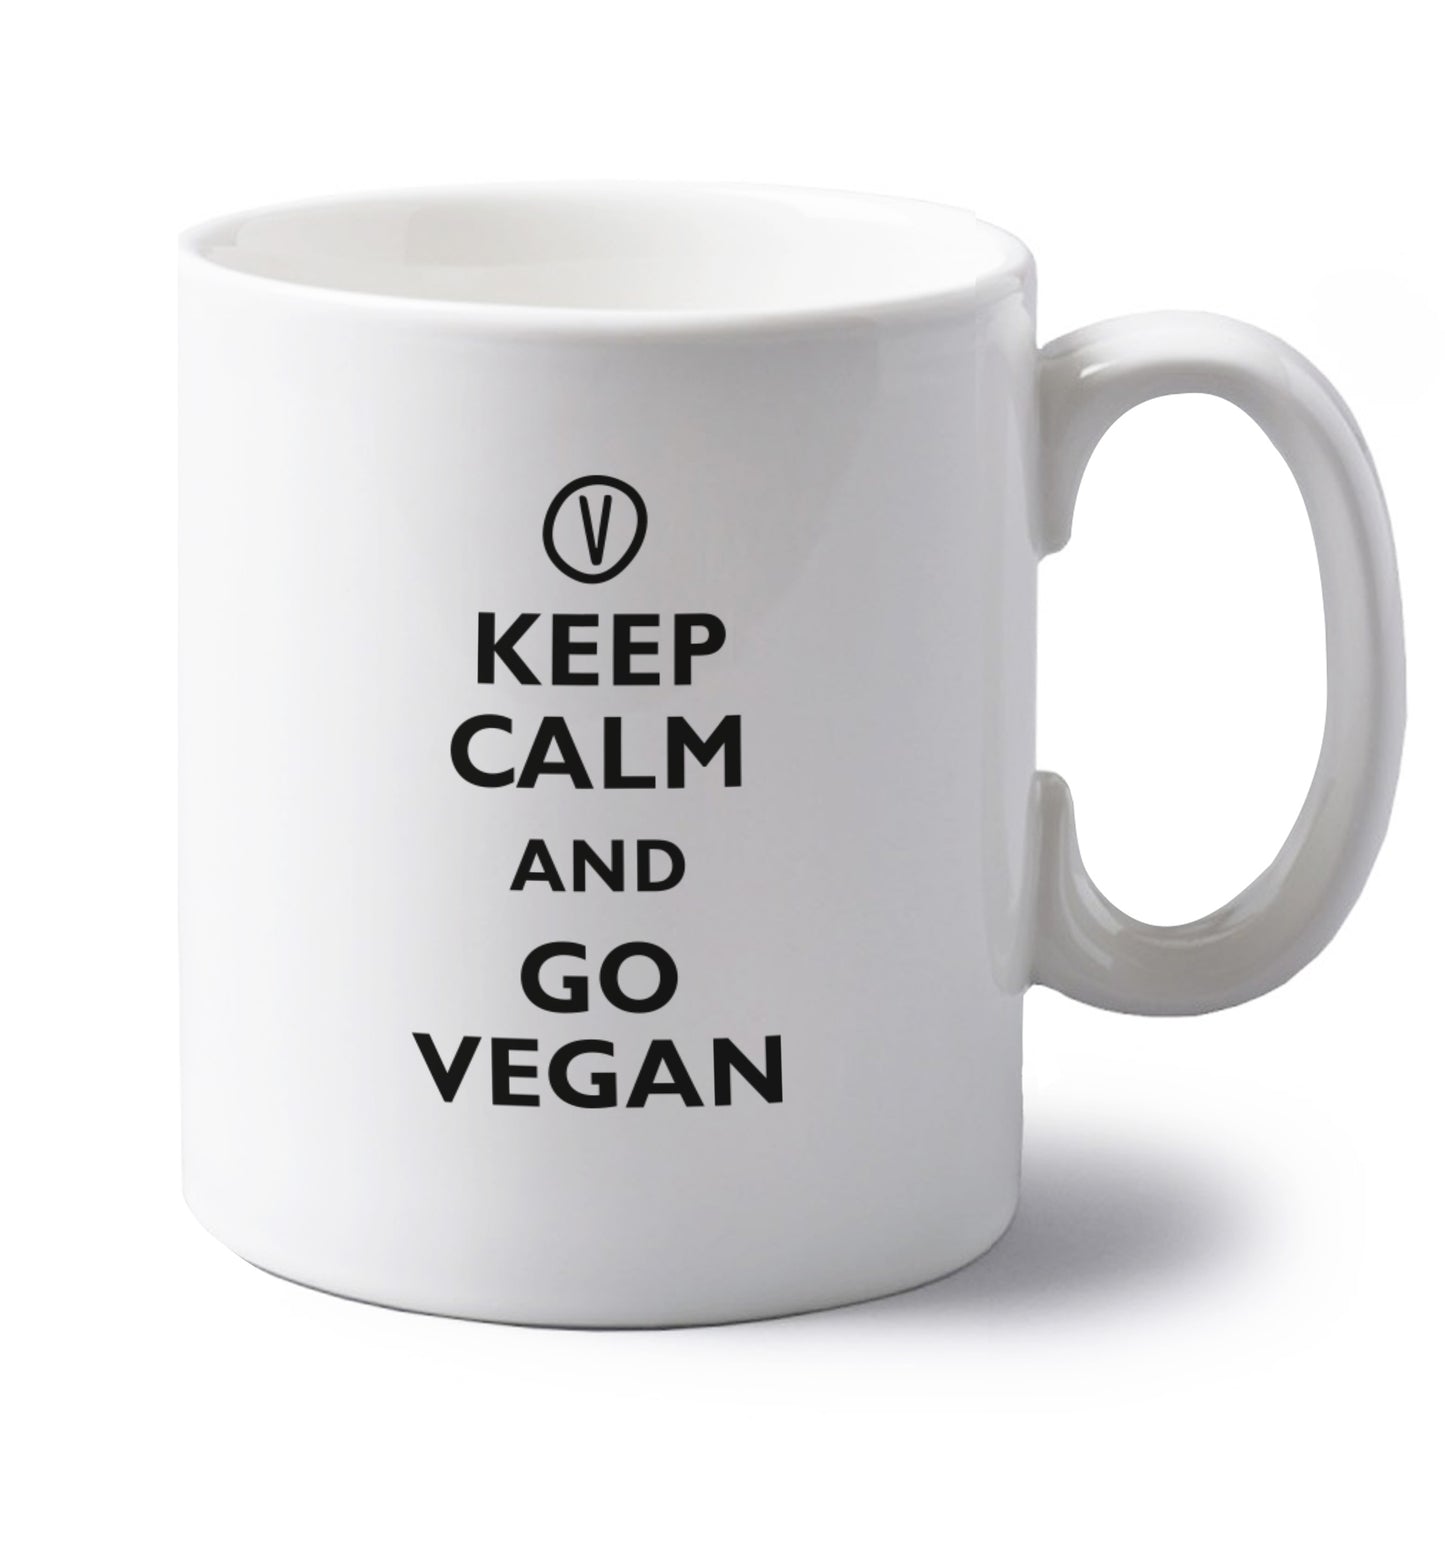 Keep calm and go vegan left handed white ceramic mug 